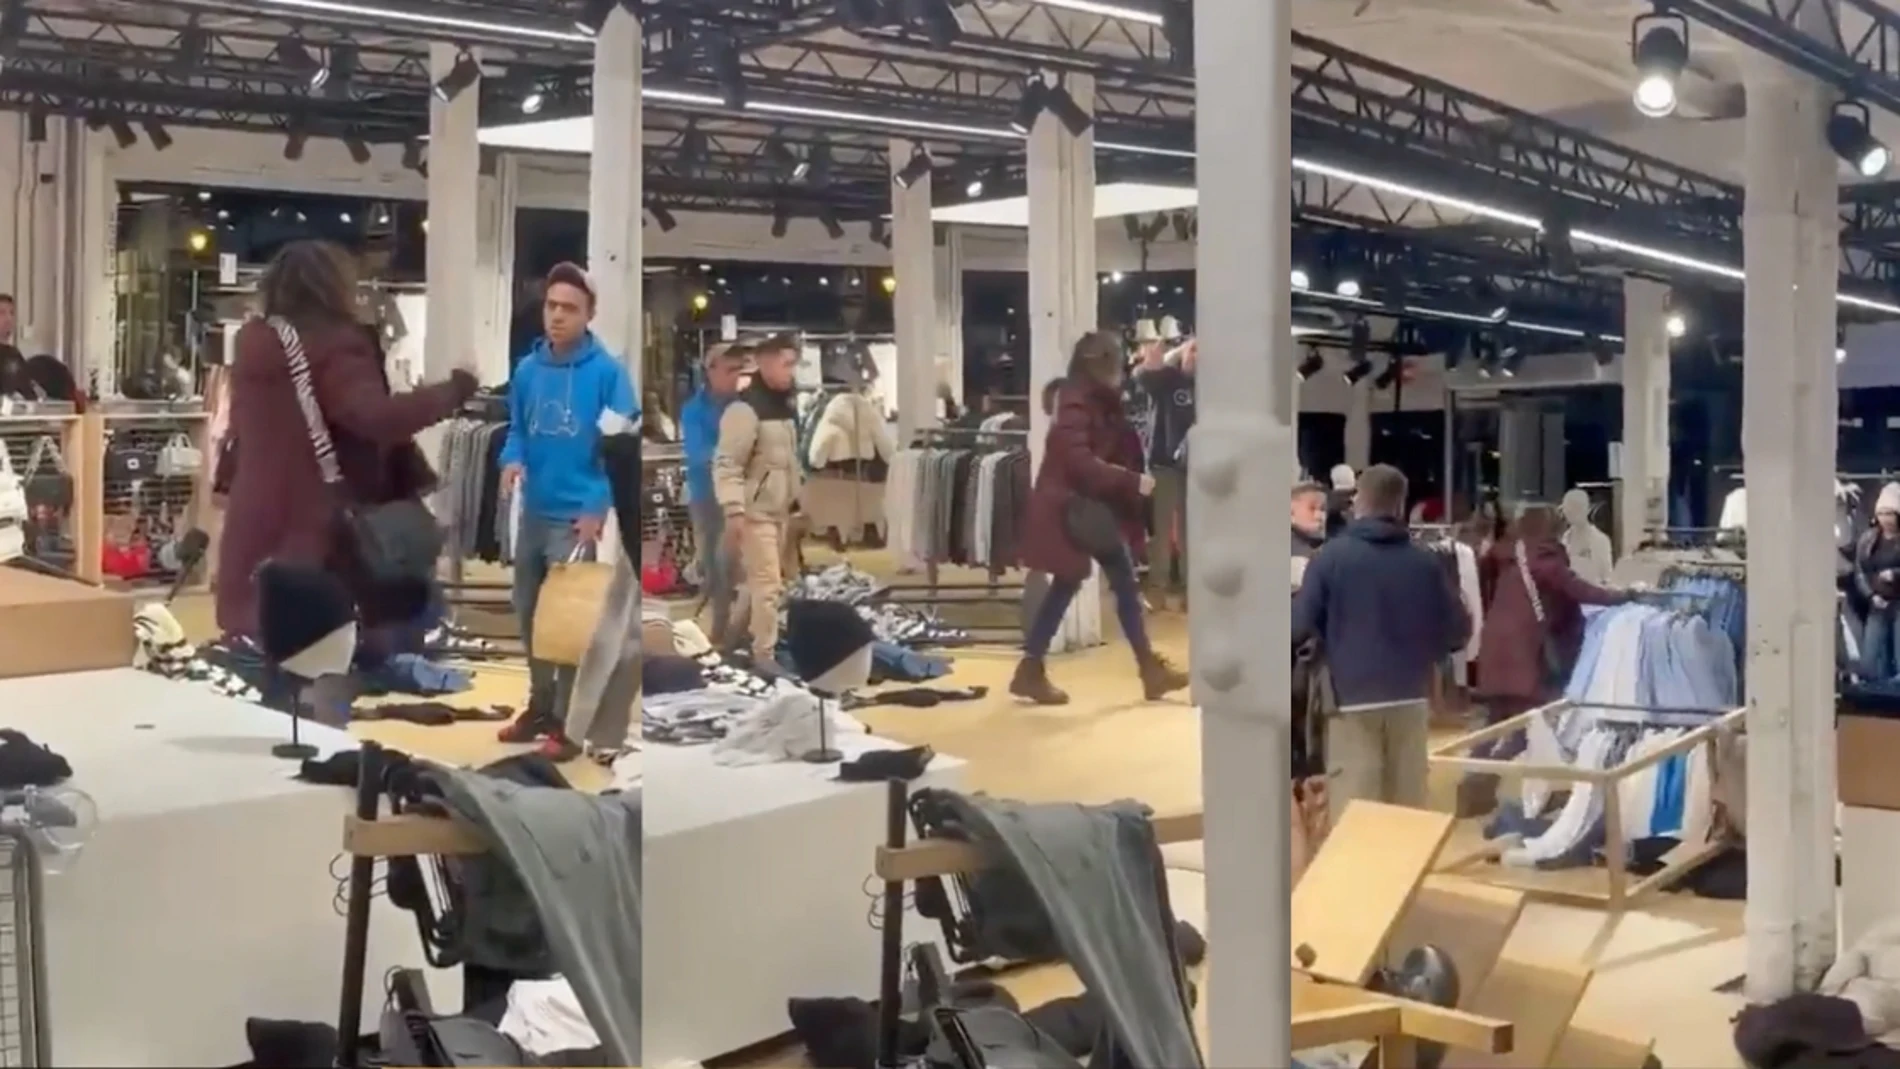 Una mujer ha destrozado una tienda en Burgos